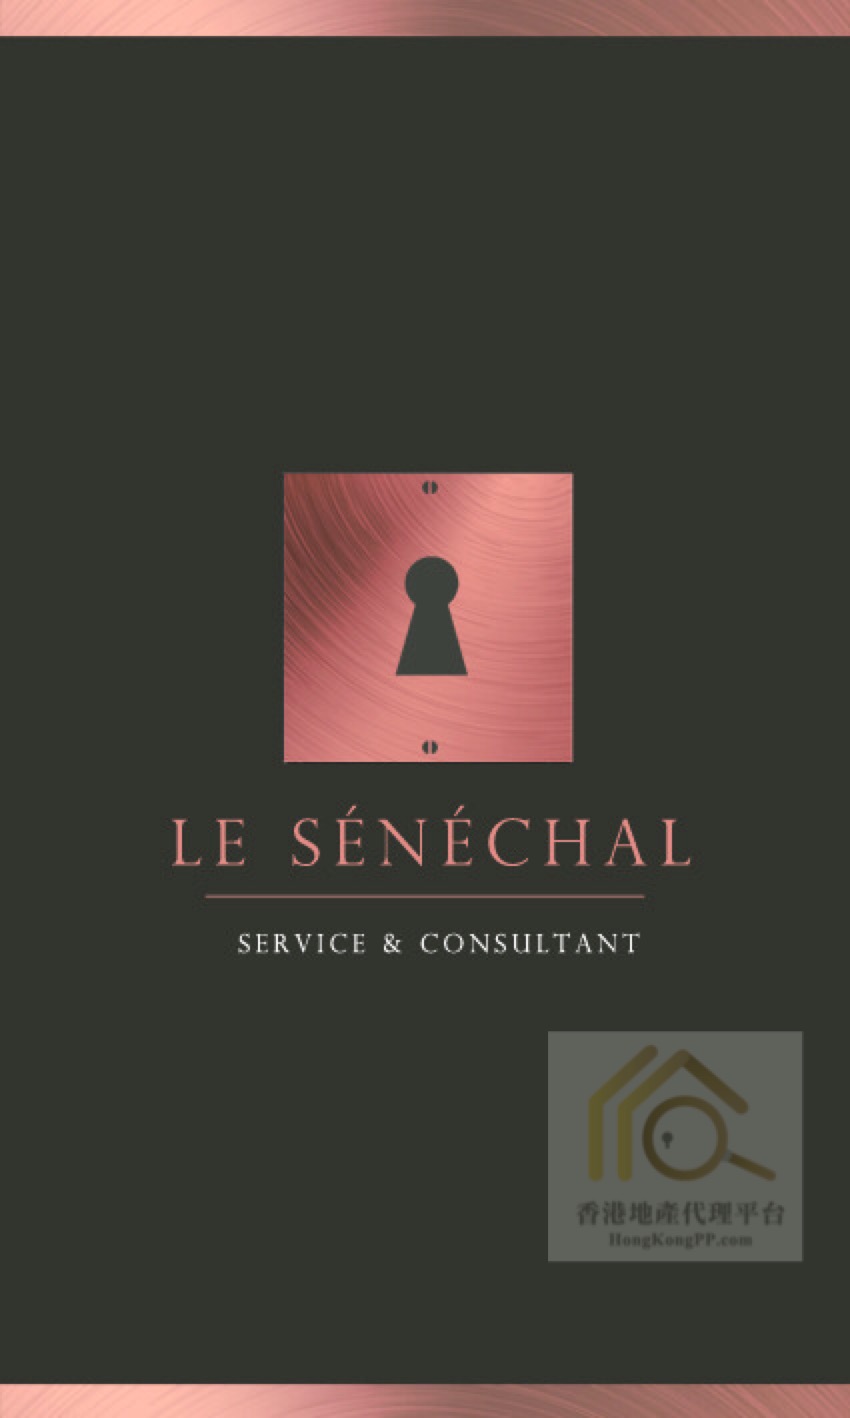 地產代理公司 Estate Agent: Le Senechal Service & Consultant Company Limited